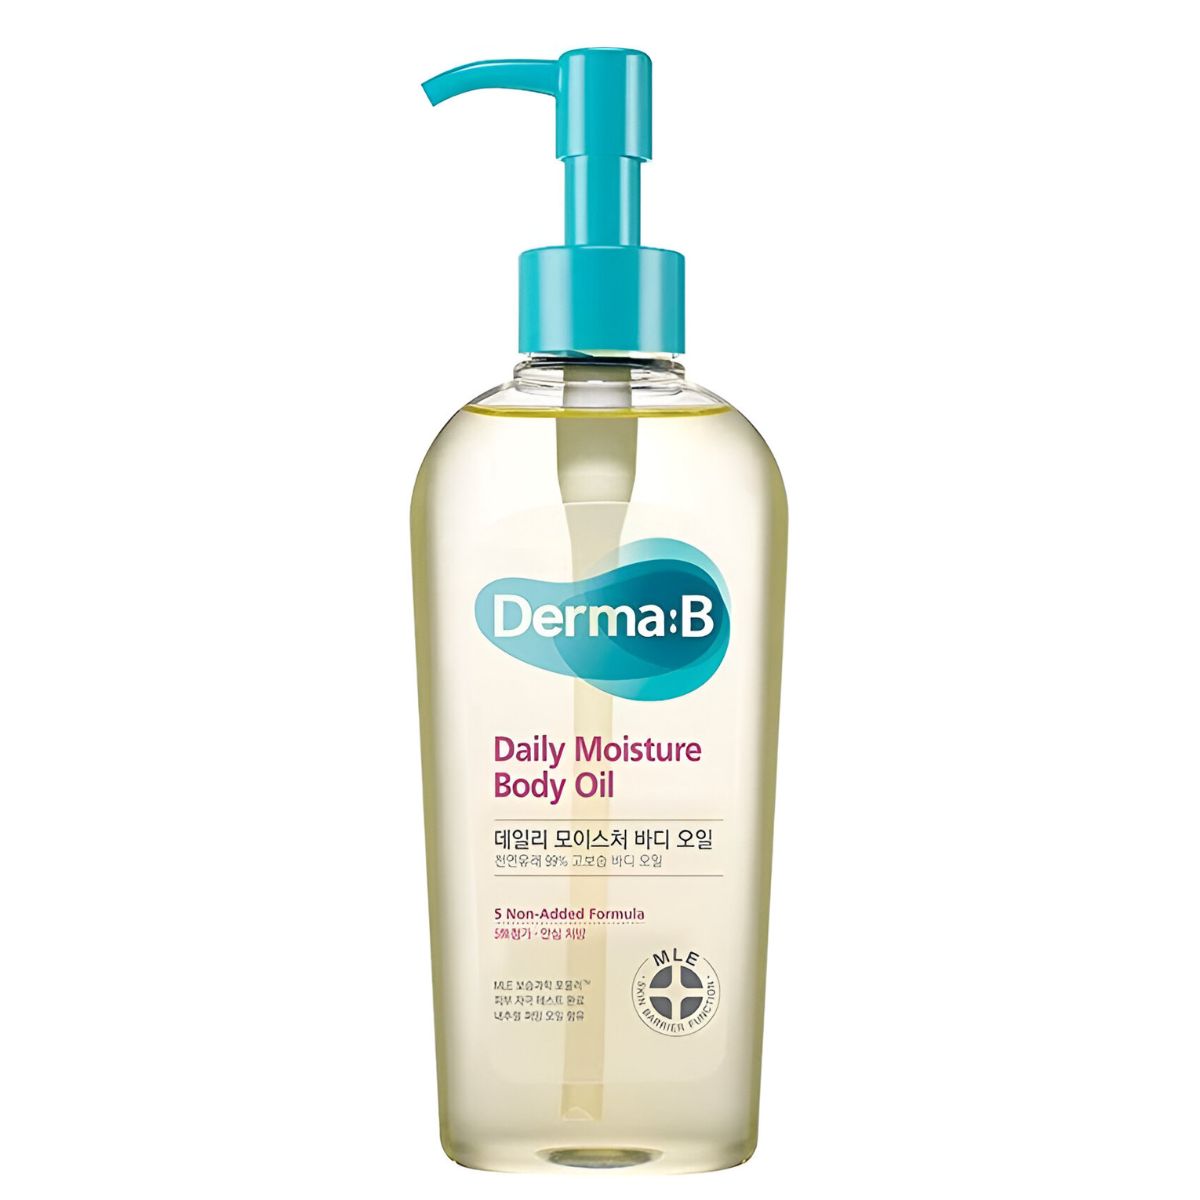 Ламеллярное парфюмированное масло для тела Derma:B Daily Moisture Body Oil arriviste парфюмированное масло для тела с шиммером african dancer 50